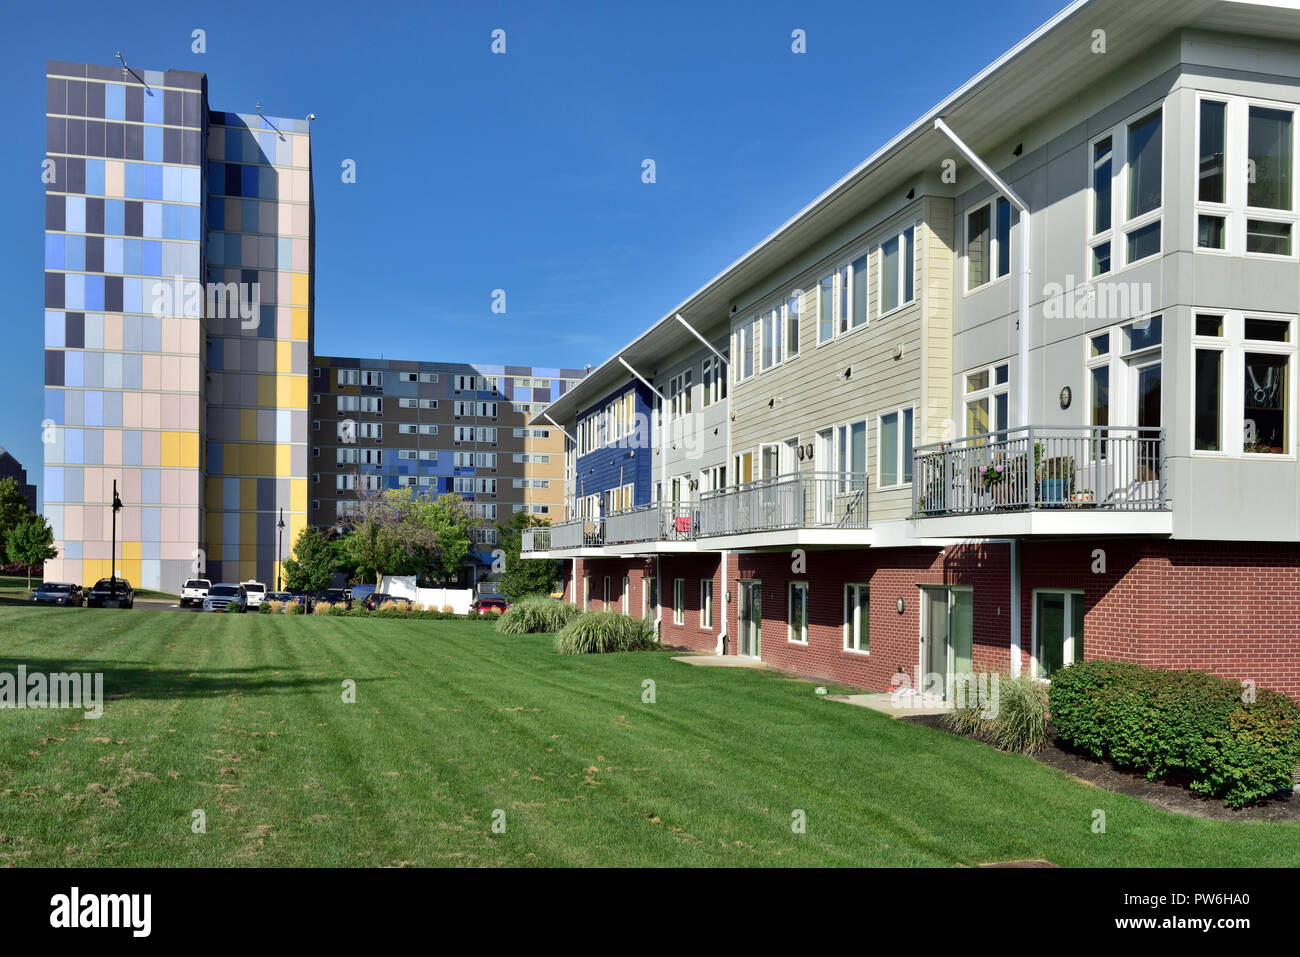 Moderno apartamento (Erie Harbour Apartments) edificios a lo largo del río Genesee en Rochester NY, EE.UU. Foto de stock